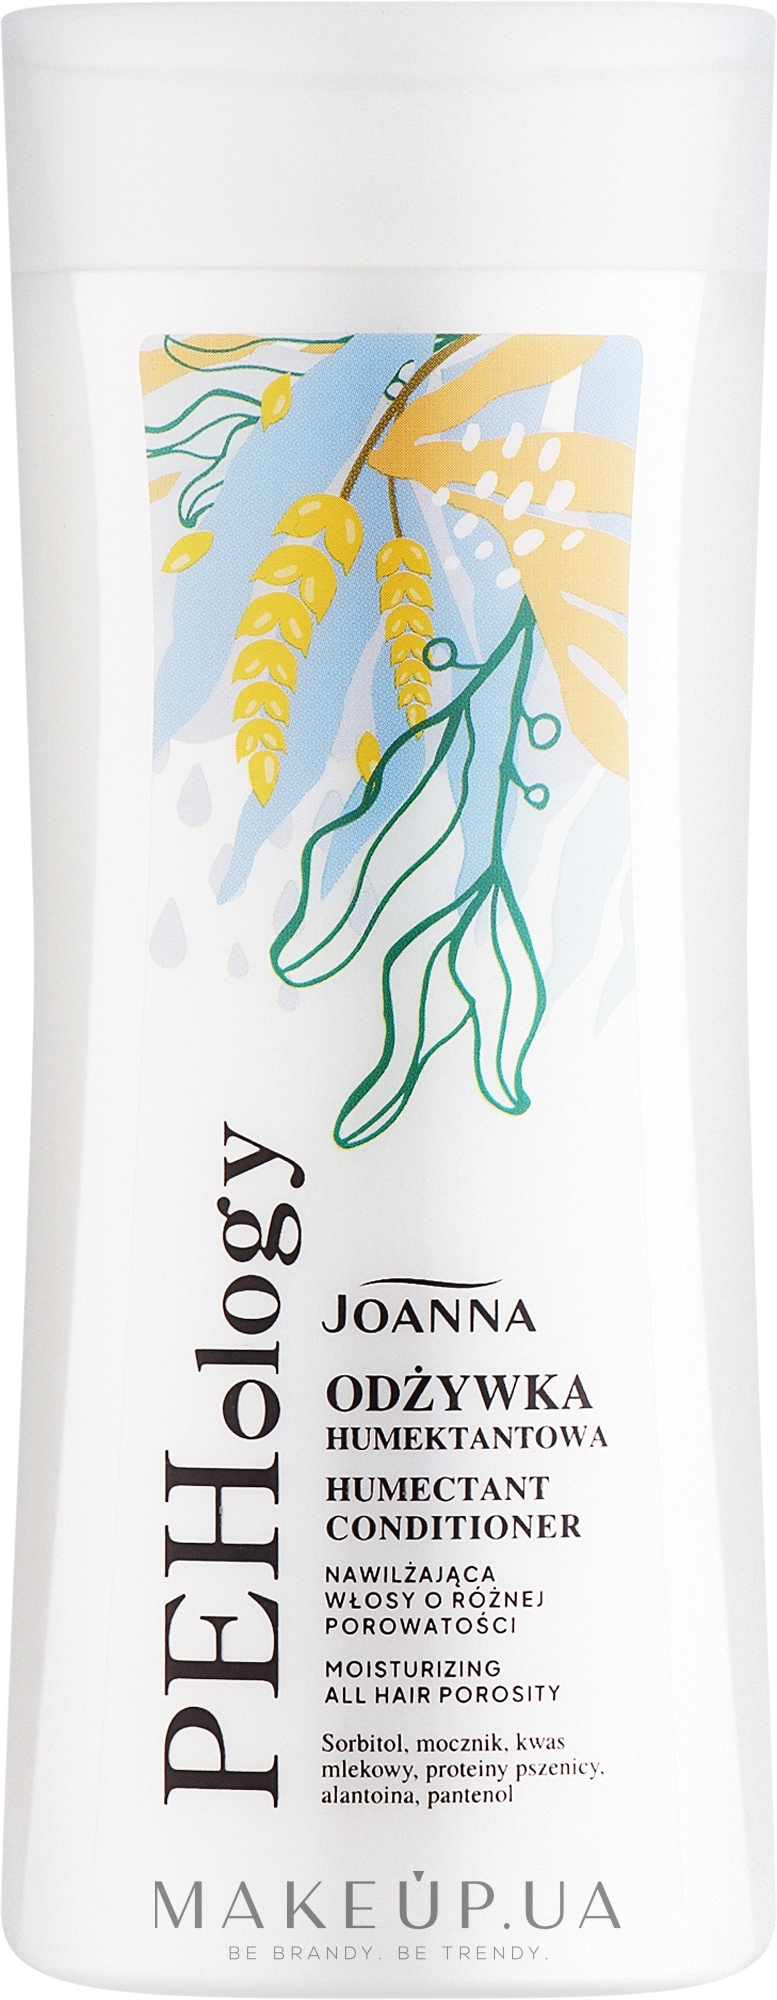 Увлажняющий кондиционер для волос разной пористости - Joanna PEHology Moisturizing All Hair Porosity Humectant Conditioner — фото 200g